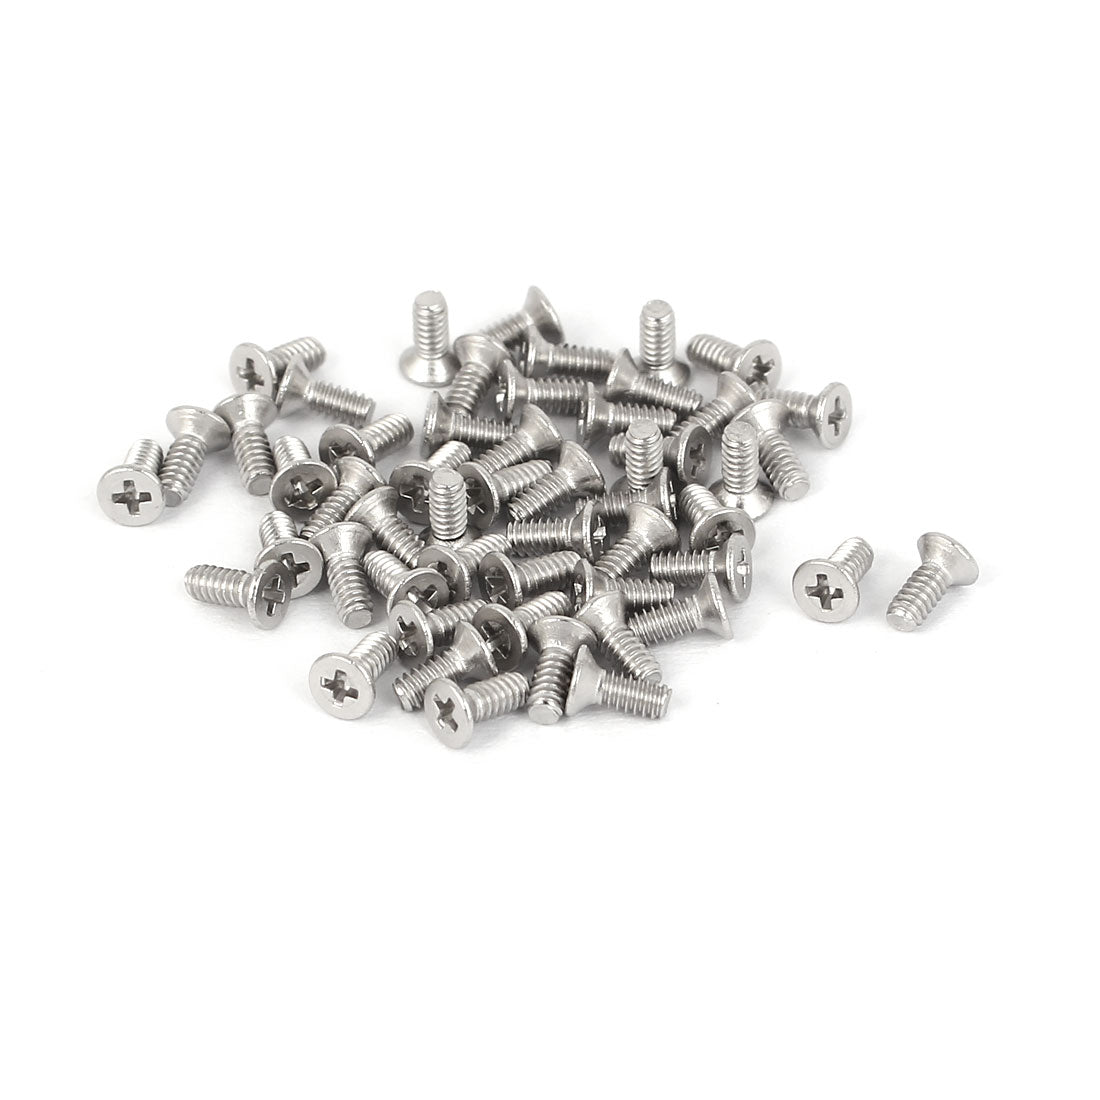 Tiny Screws Phillips Flat Head Carbon Steel Machine Screws, 500pcs - M1.4x3mm